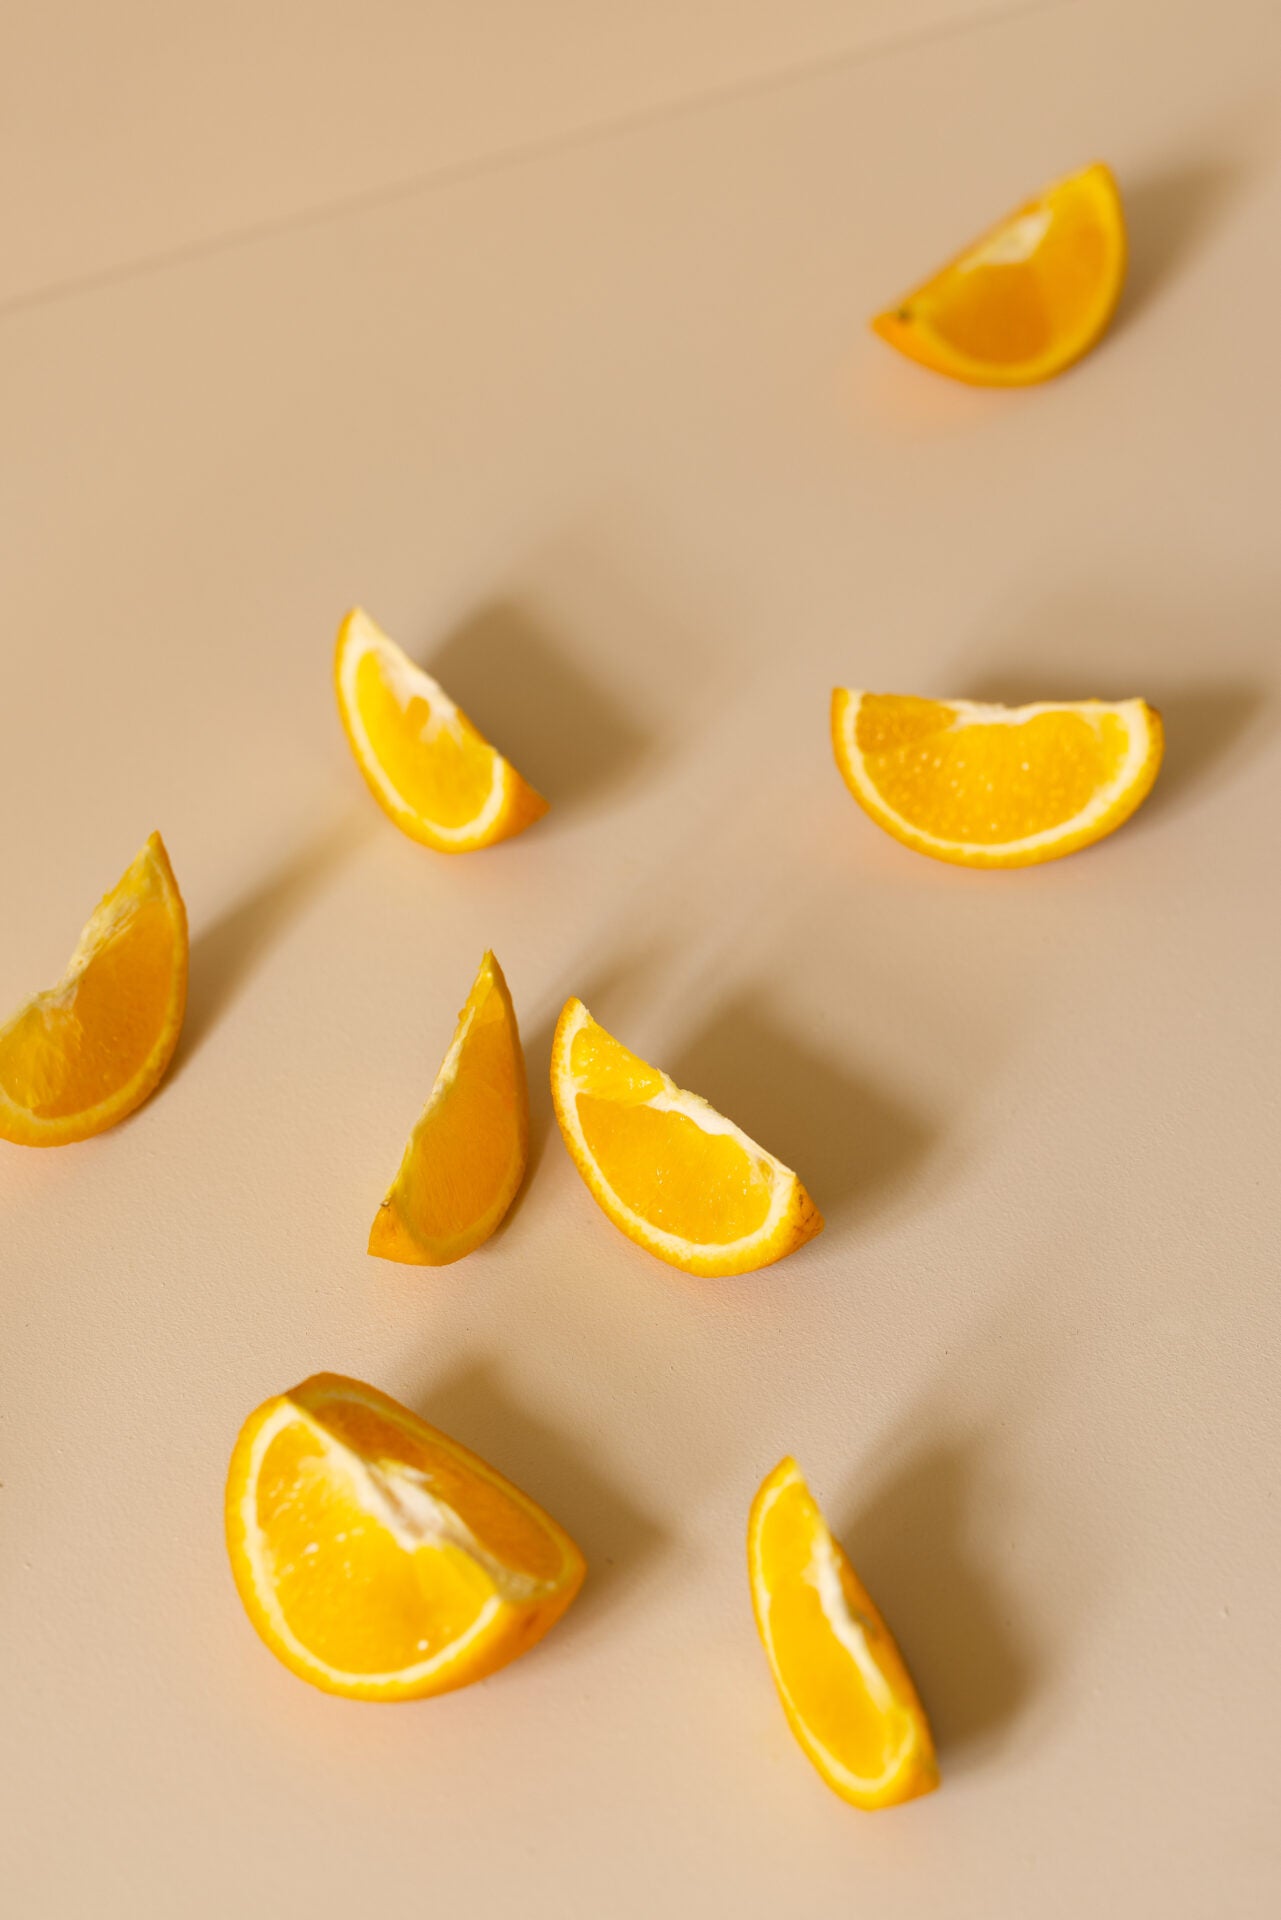 Biohajoava Käsisaippua - Appelsiini & Bergamotti